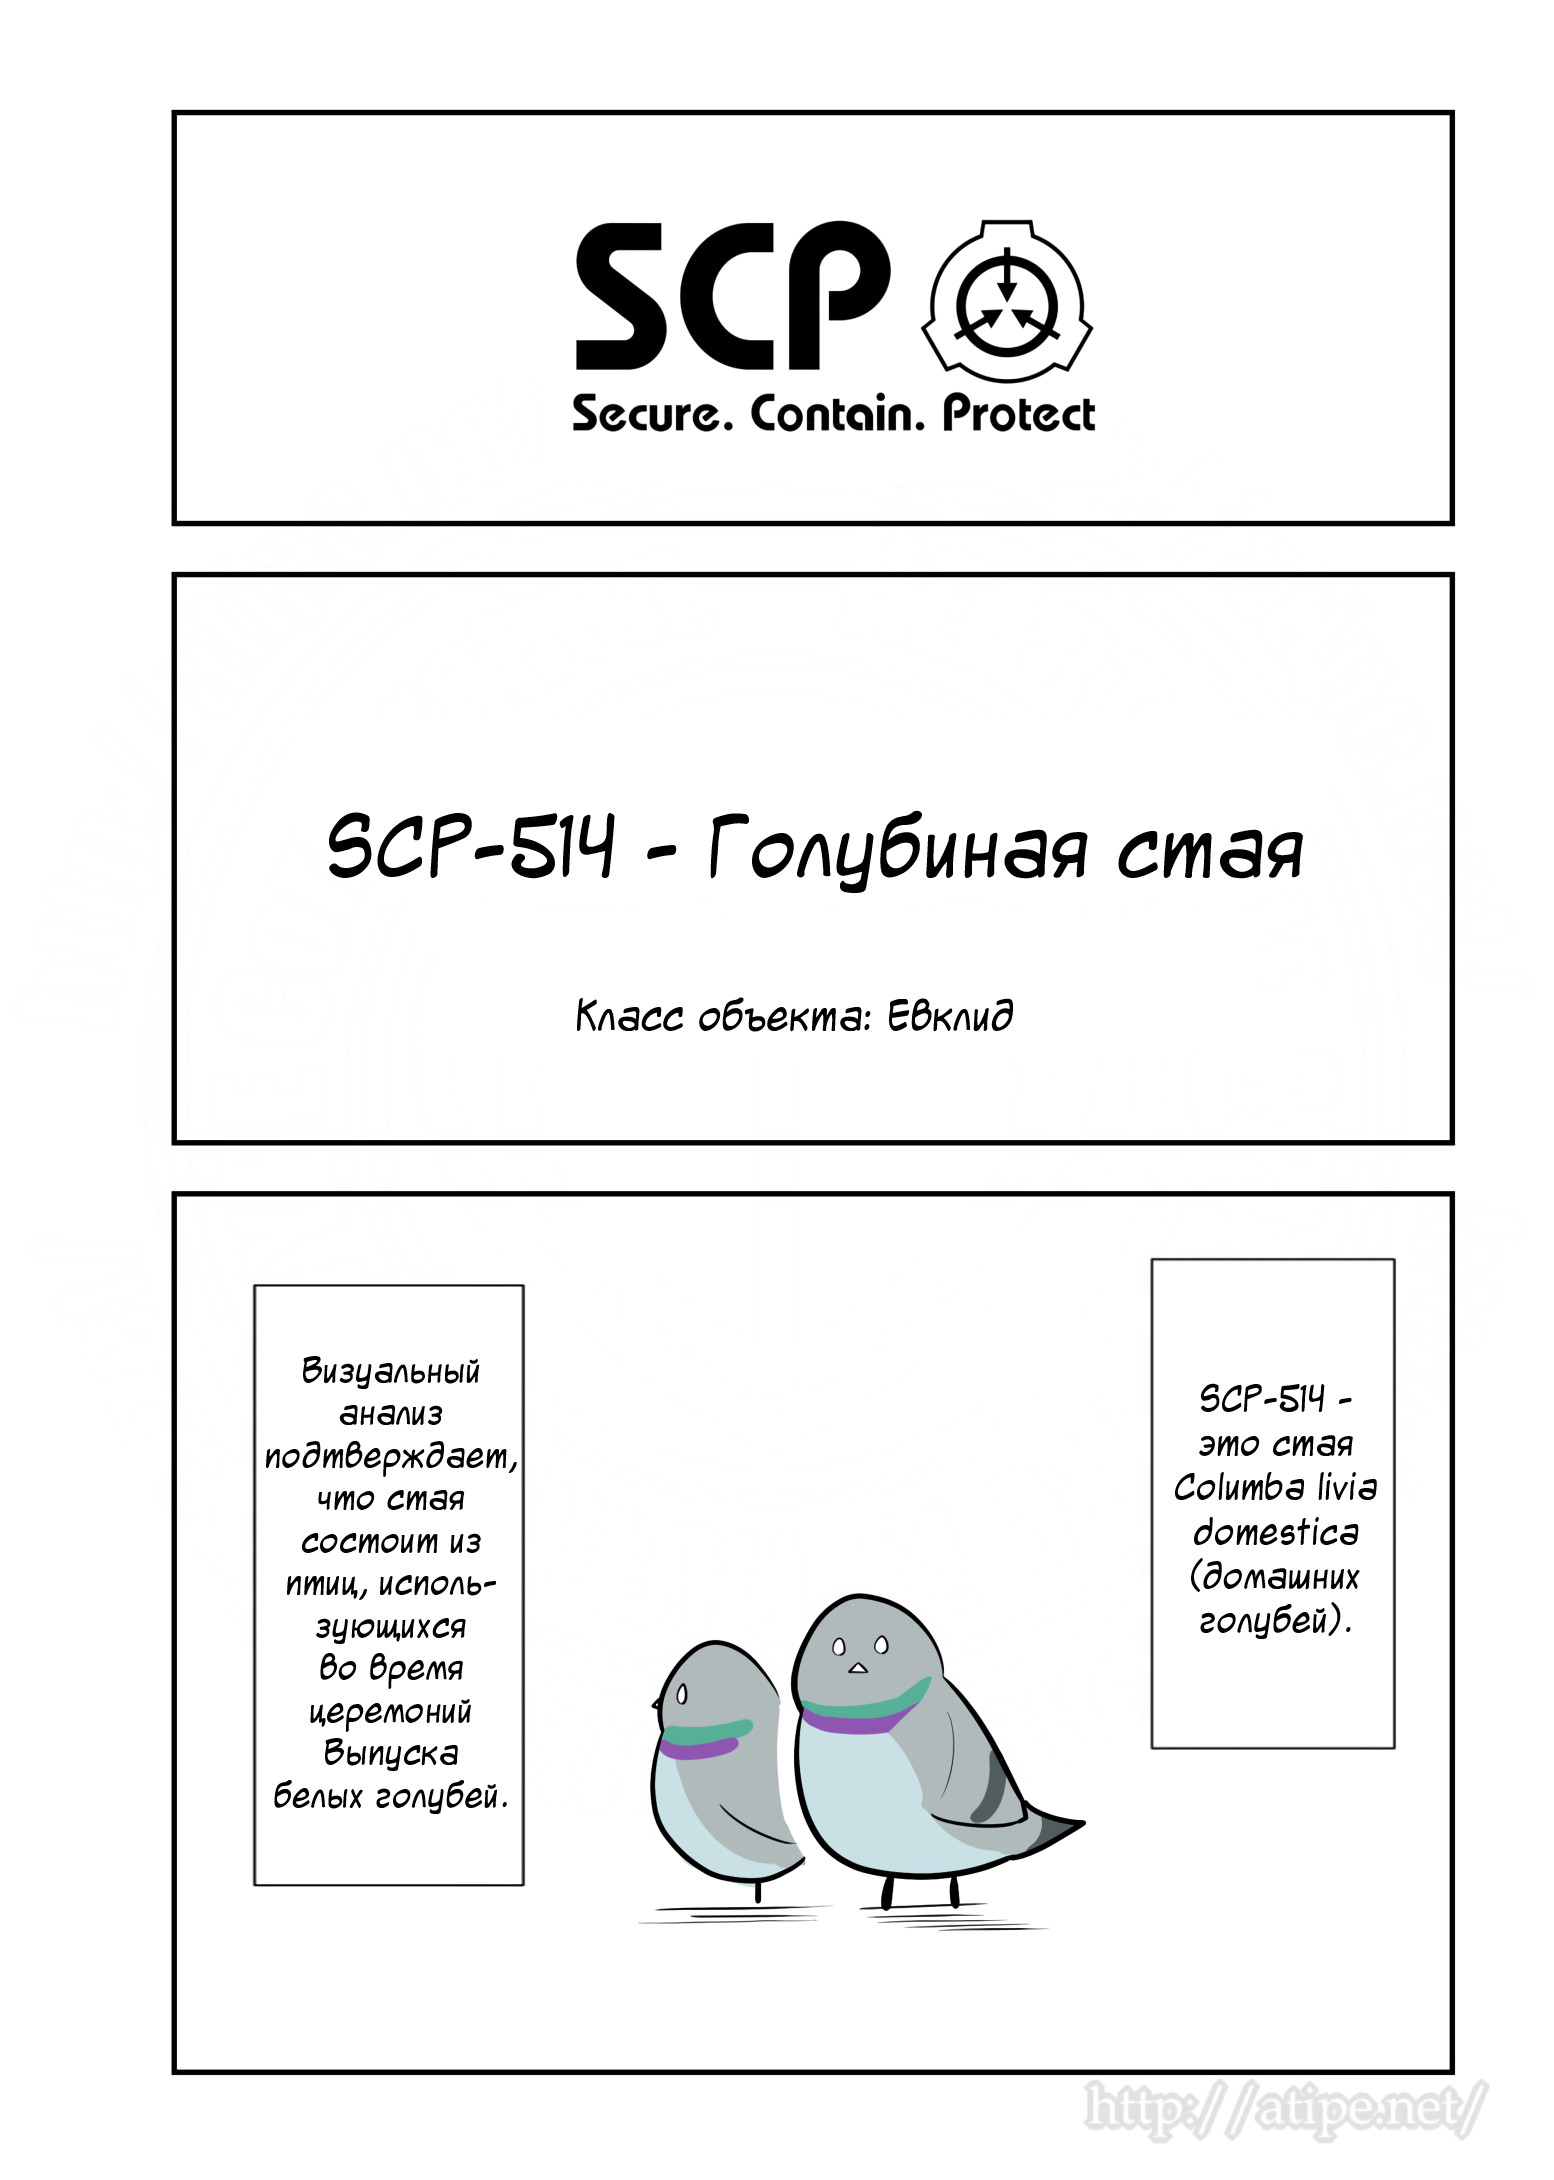 Упрощенный SCP 1 - 86 SCP-514 - Голубиная стая